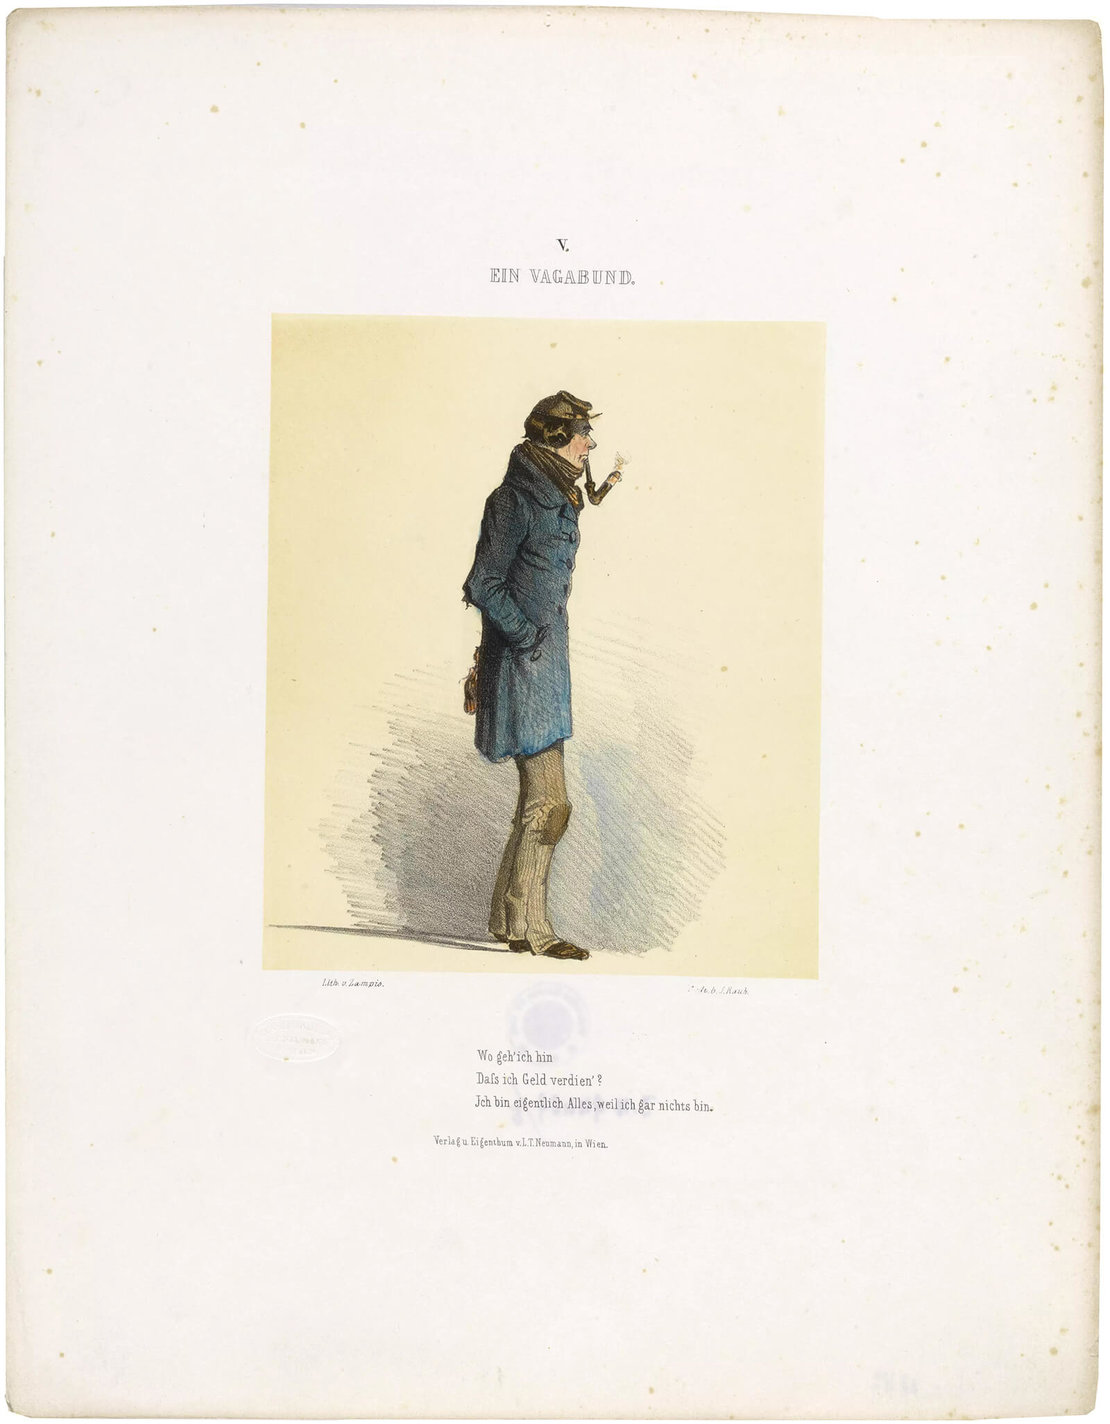 Abbildung aus Ignaz Franz Castellis (Autor) und Anton Zampis` (Künstler) „Wiener Charakteren in bildlichen Darstellungen“, 1847, Wien Museum 